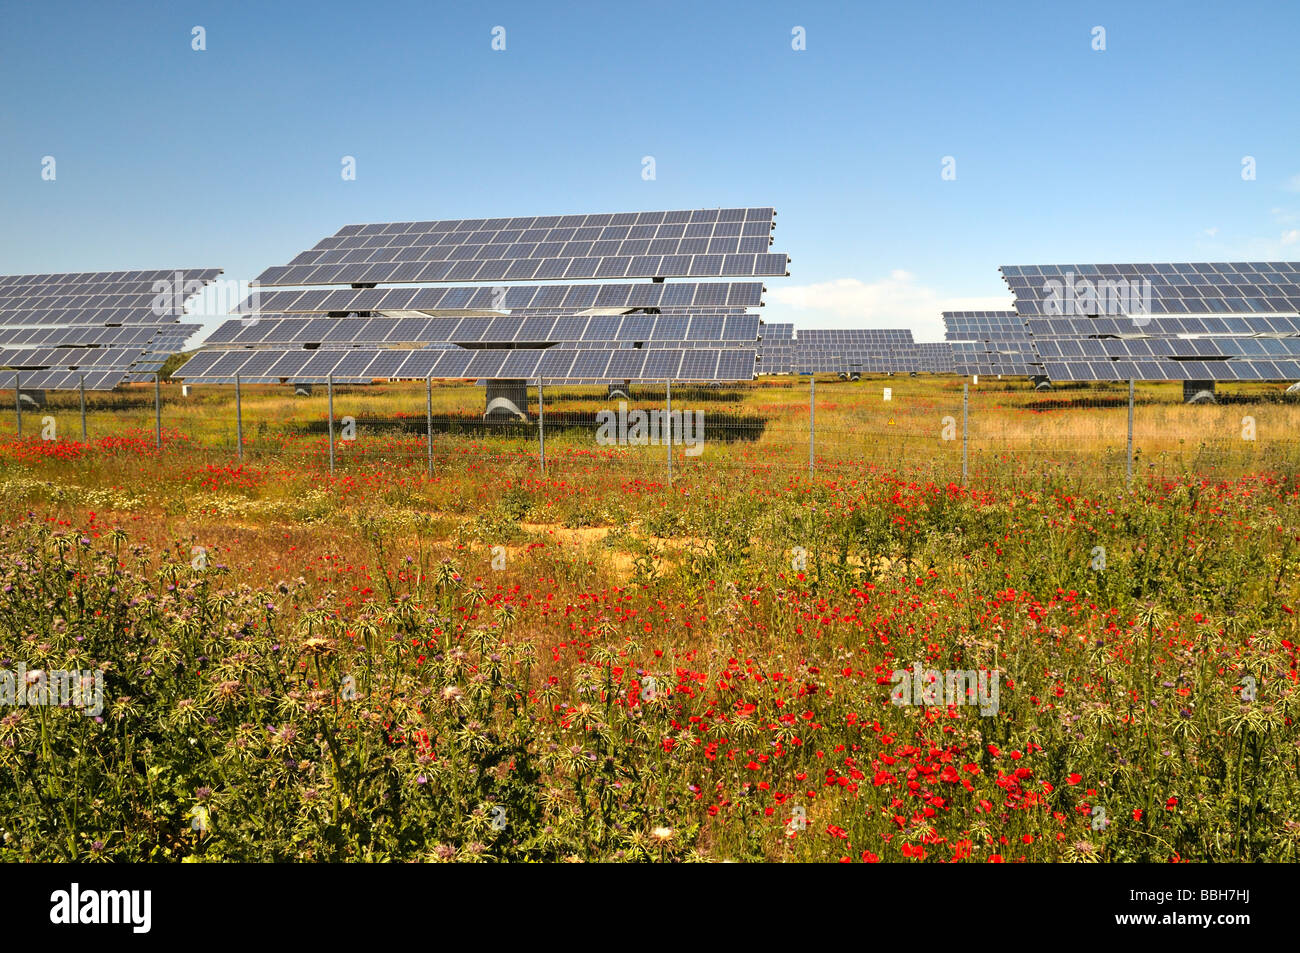 Champ avec des coquelicots rouges et de matrices de panneaux solaires pour la production d'électricité, la province de Malaga Espagne Banque D'Images